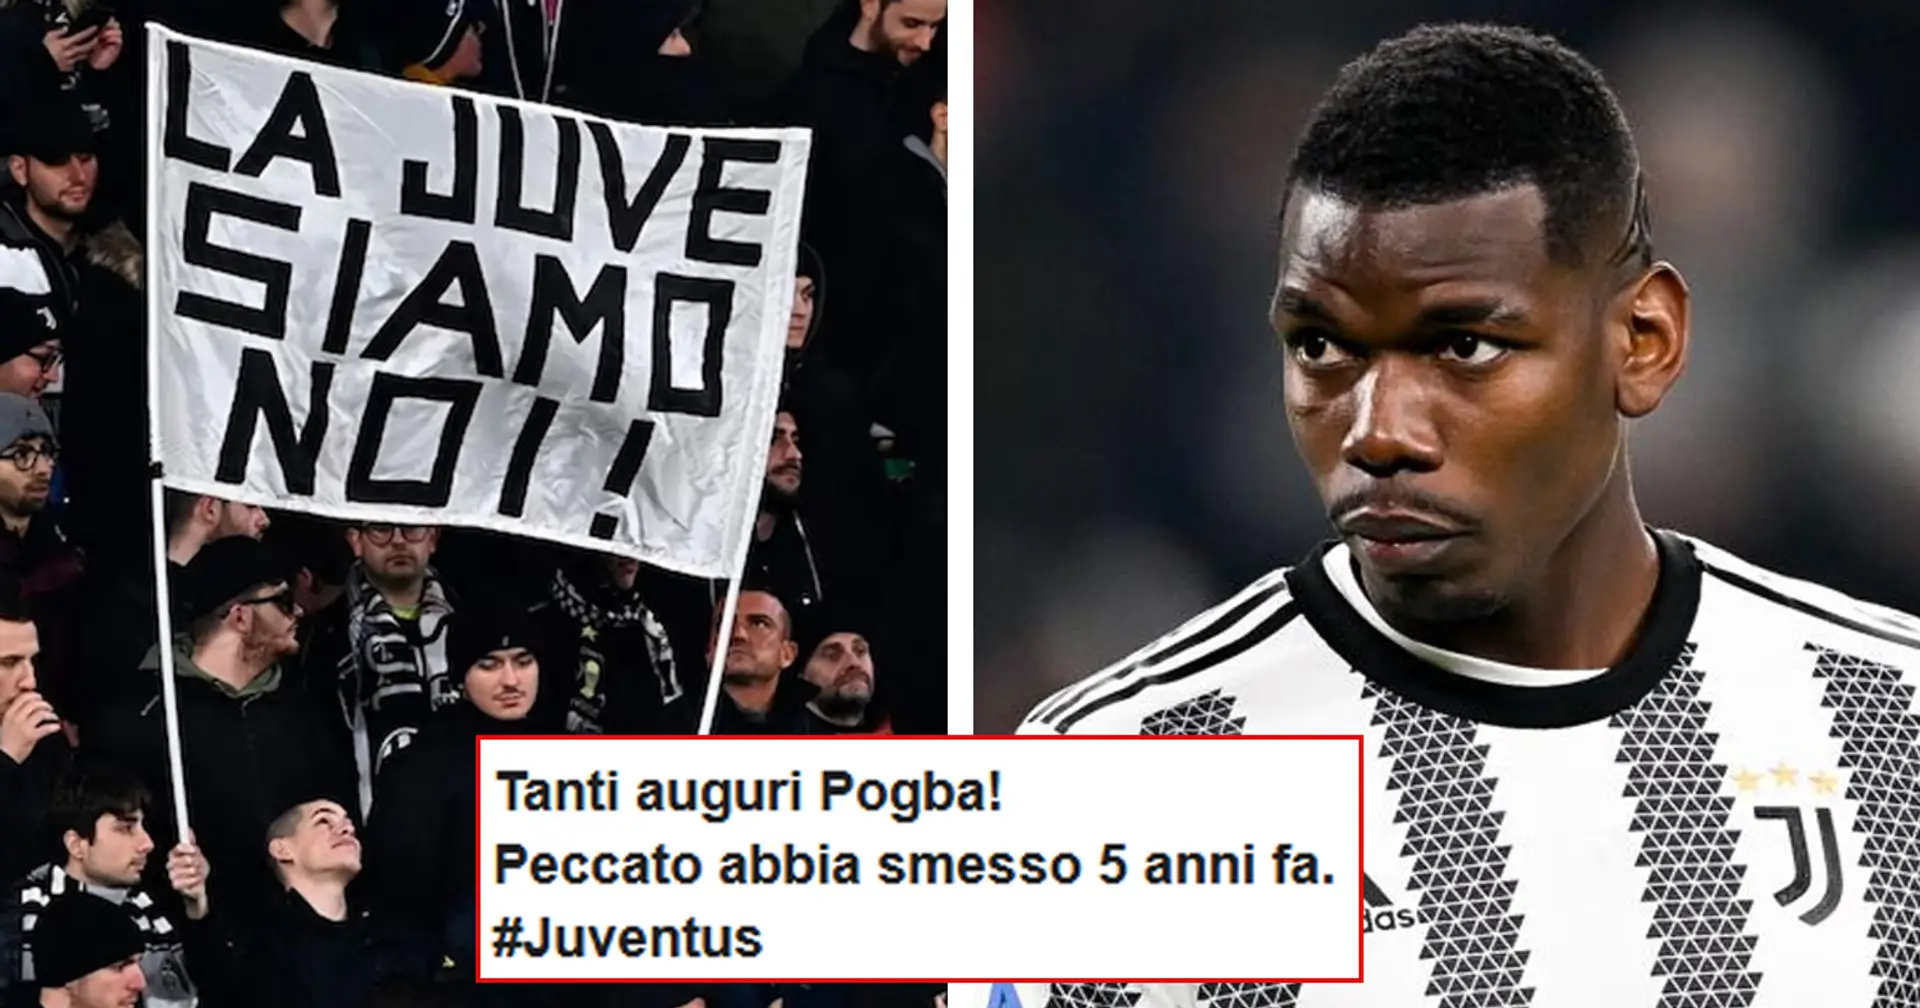 La Juventus celebra sui social i 31 anni di Pogba, immediate le reazioni dei tifosi: "Chi è?"